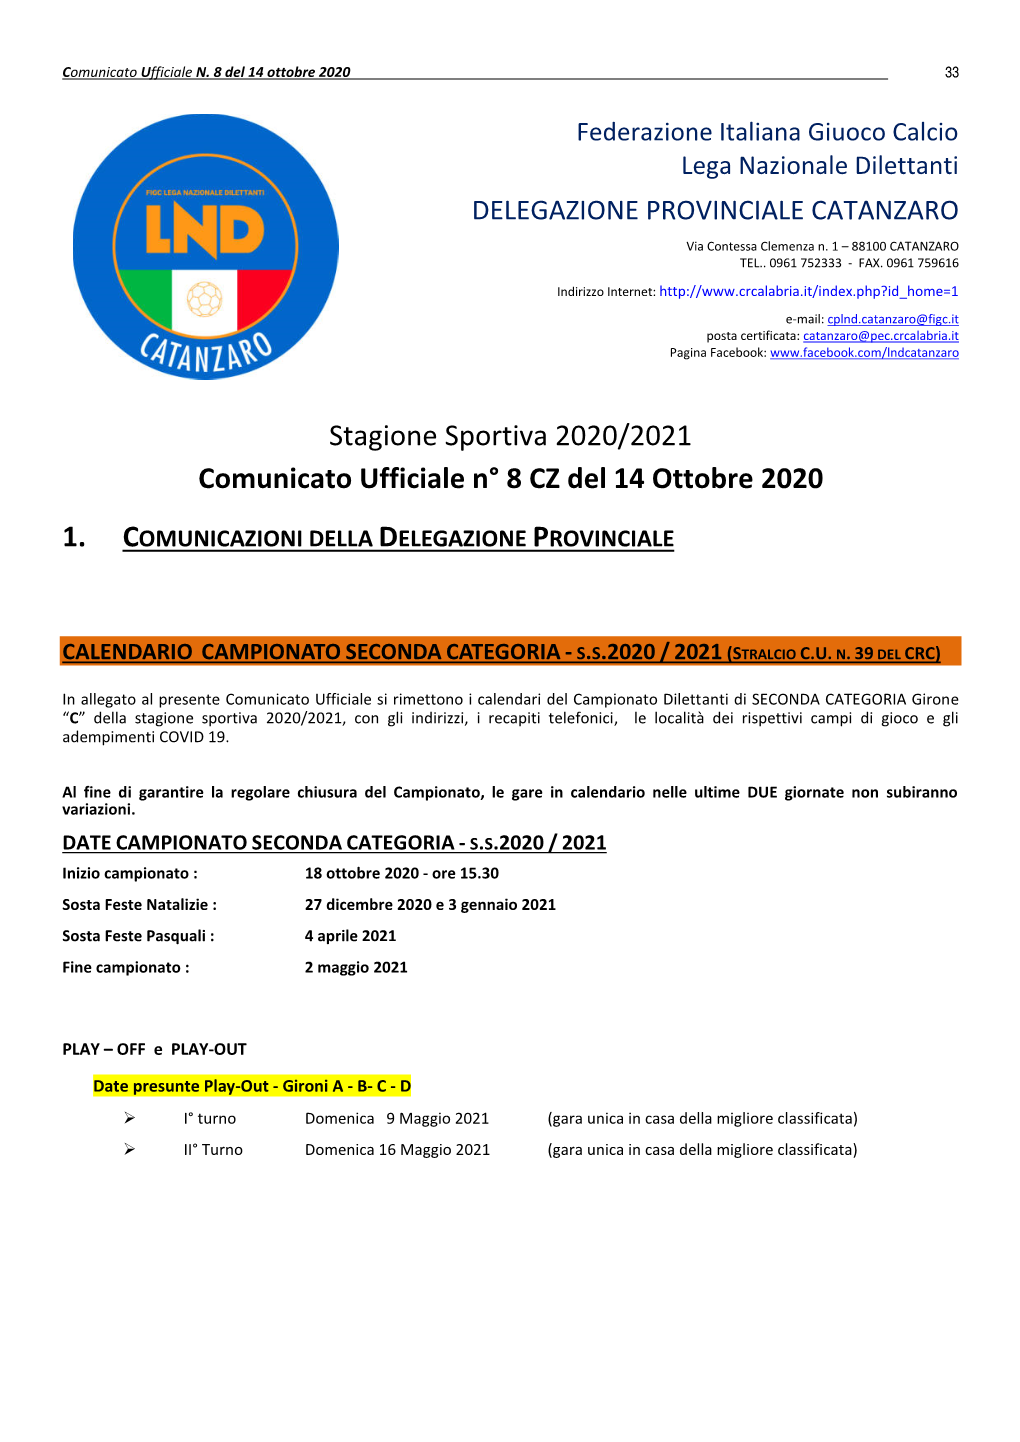 Stagione Sportiva 2020/2021 Comunicato Ufficiale N° 8 CZ Del 14 Ottobre 2020